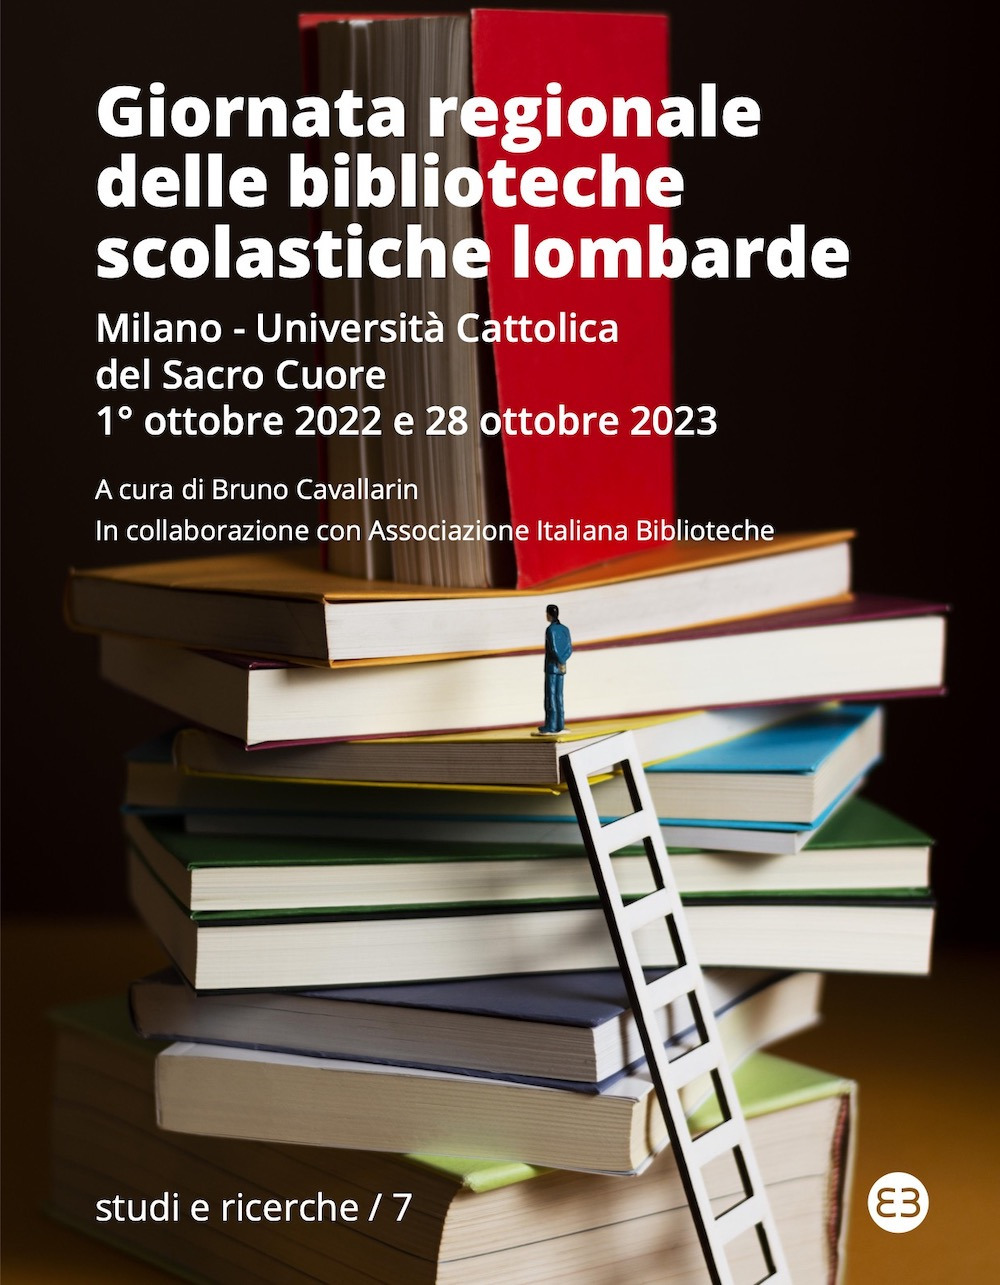 Giornata regionale delle biblioteche scolastiche lombarde. Milano, Università Cattolica del Sacro Cuore, 1° ottobre 2022 e 28 ottobre 2023